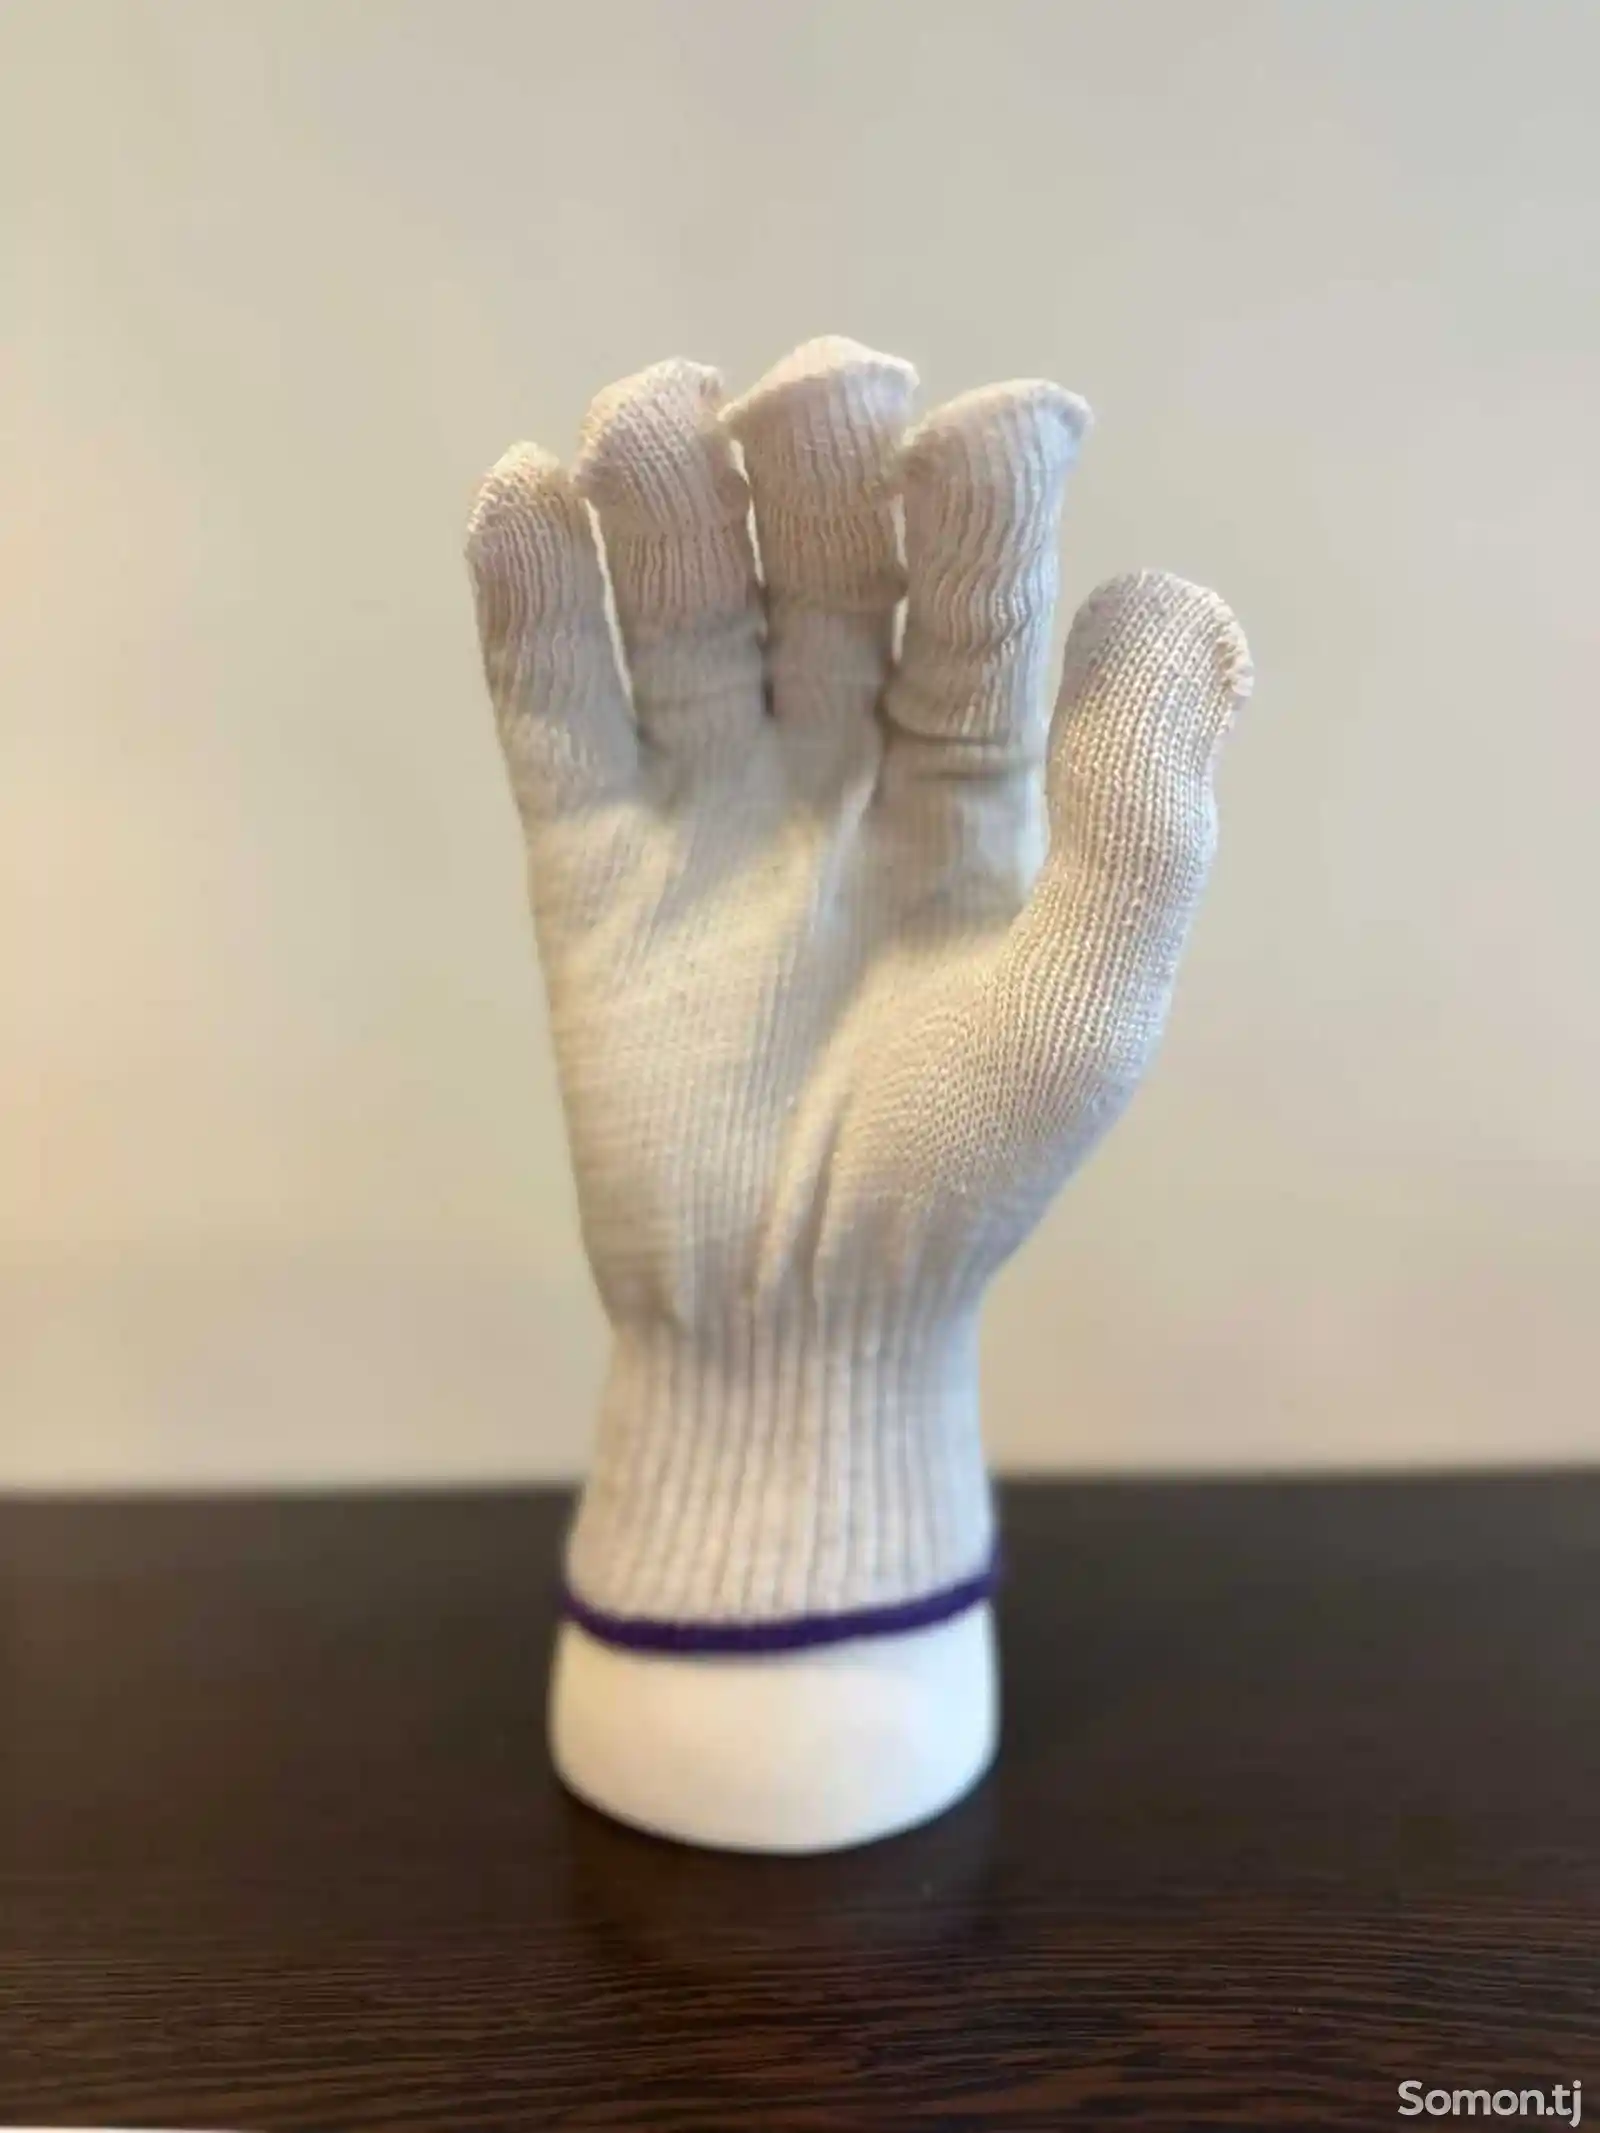 Защитите свои руки с профессиональными строительными перчатками-14